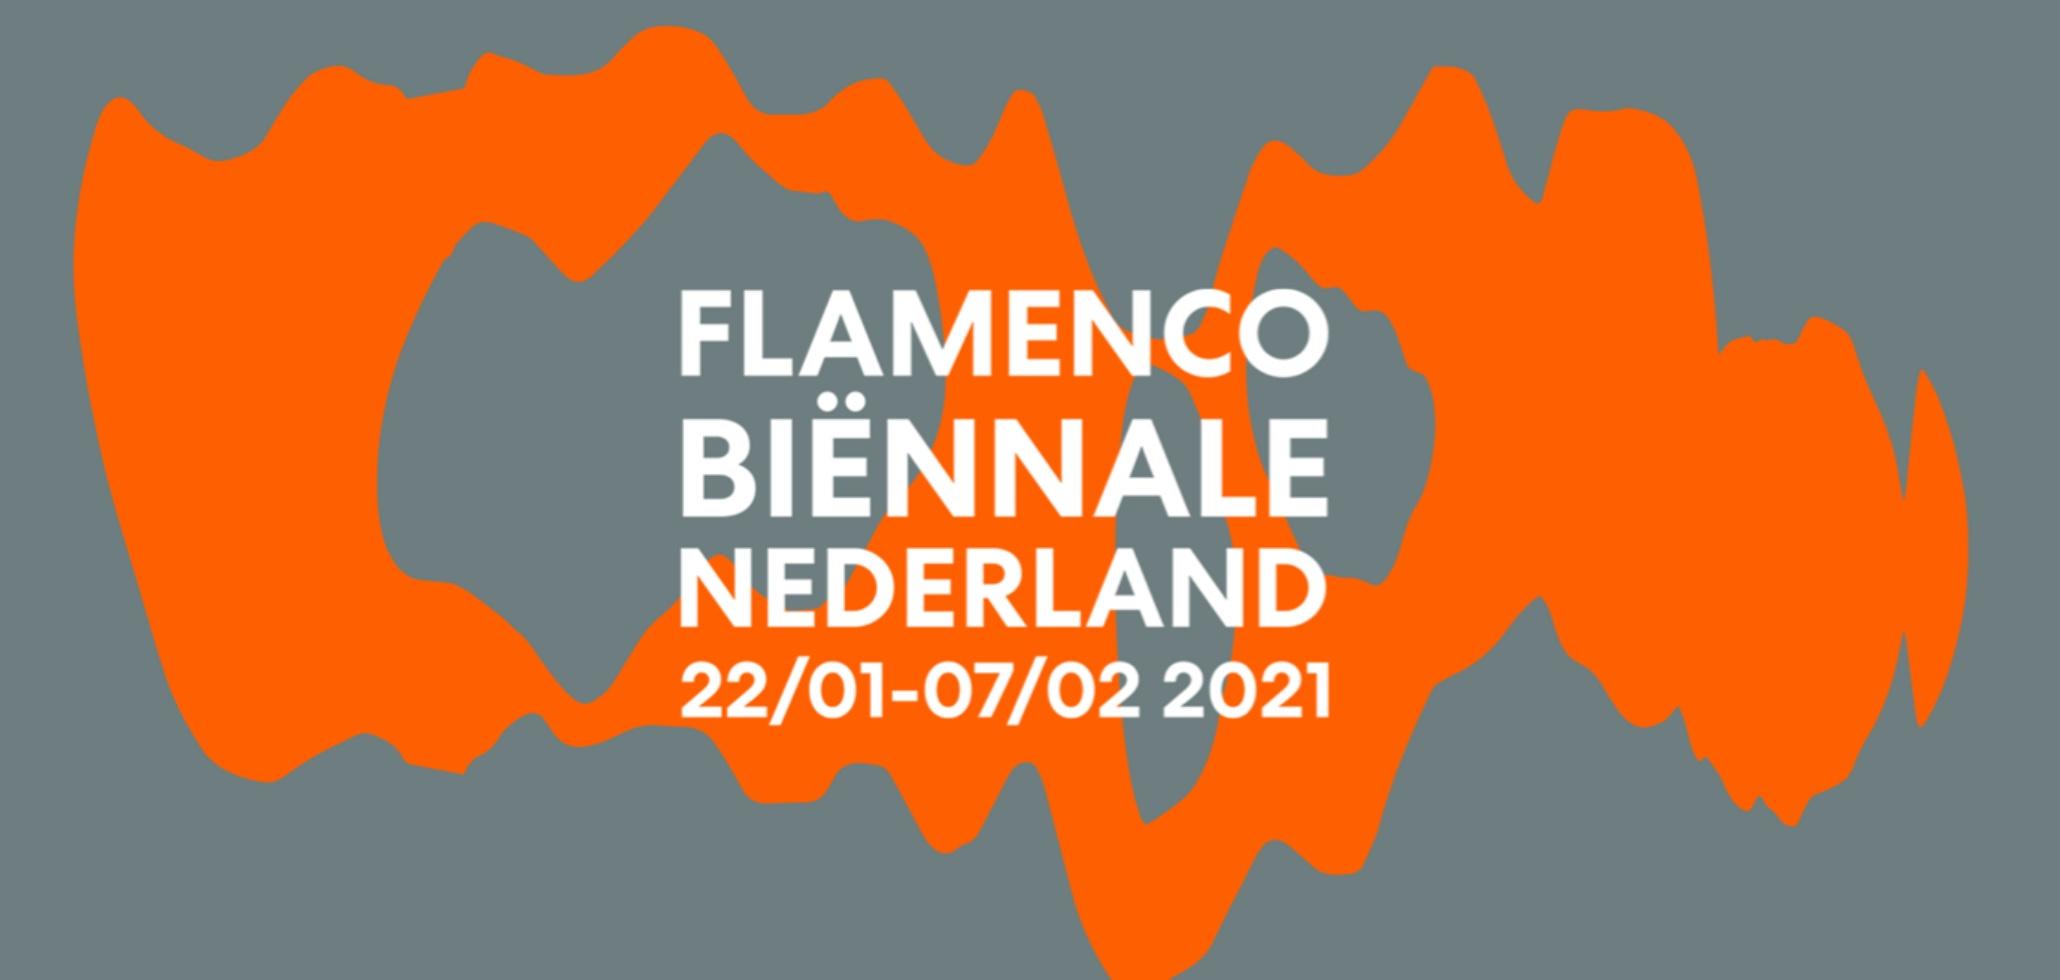 La VIII Bienal de Flamenco de los Países Bajos resiste al Covid19 con un formato live and streaming